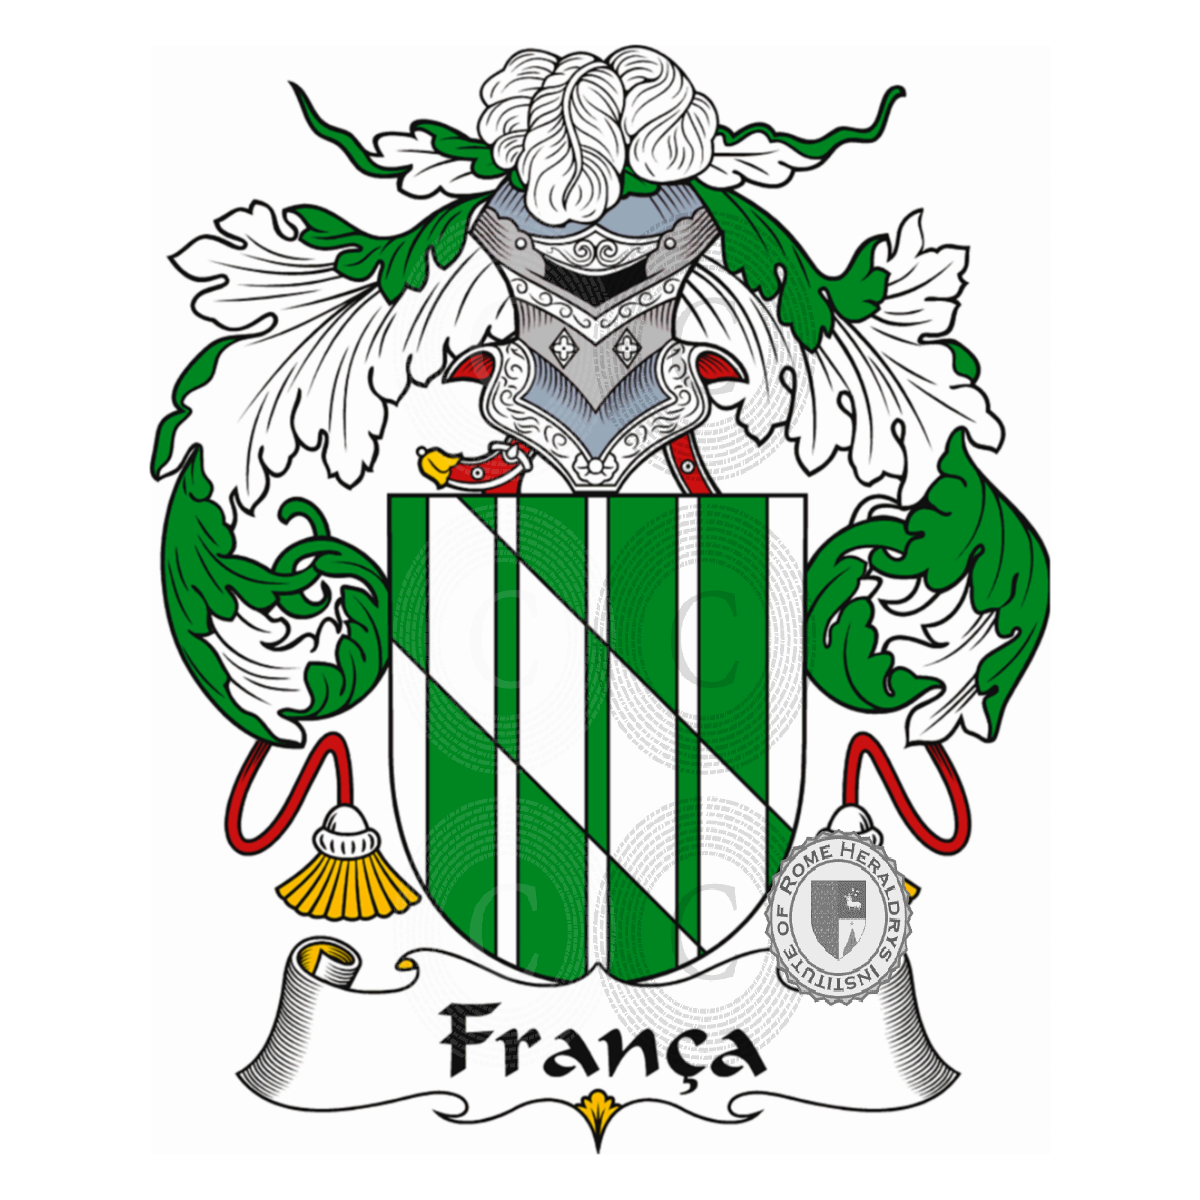 Brasão da famíliaFrança, de França,de Franqui,Franca,Franco,Franqui